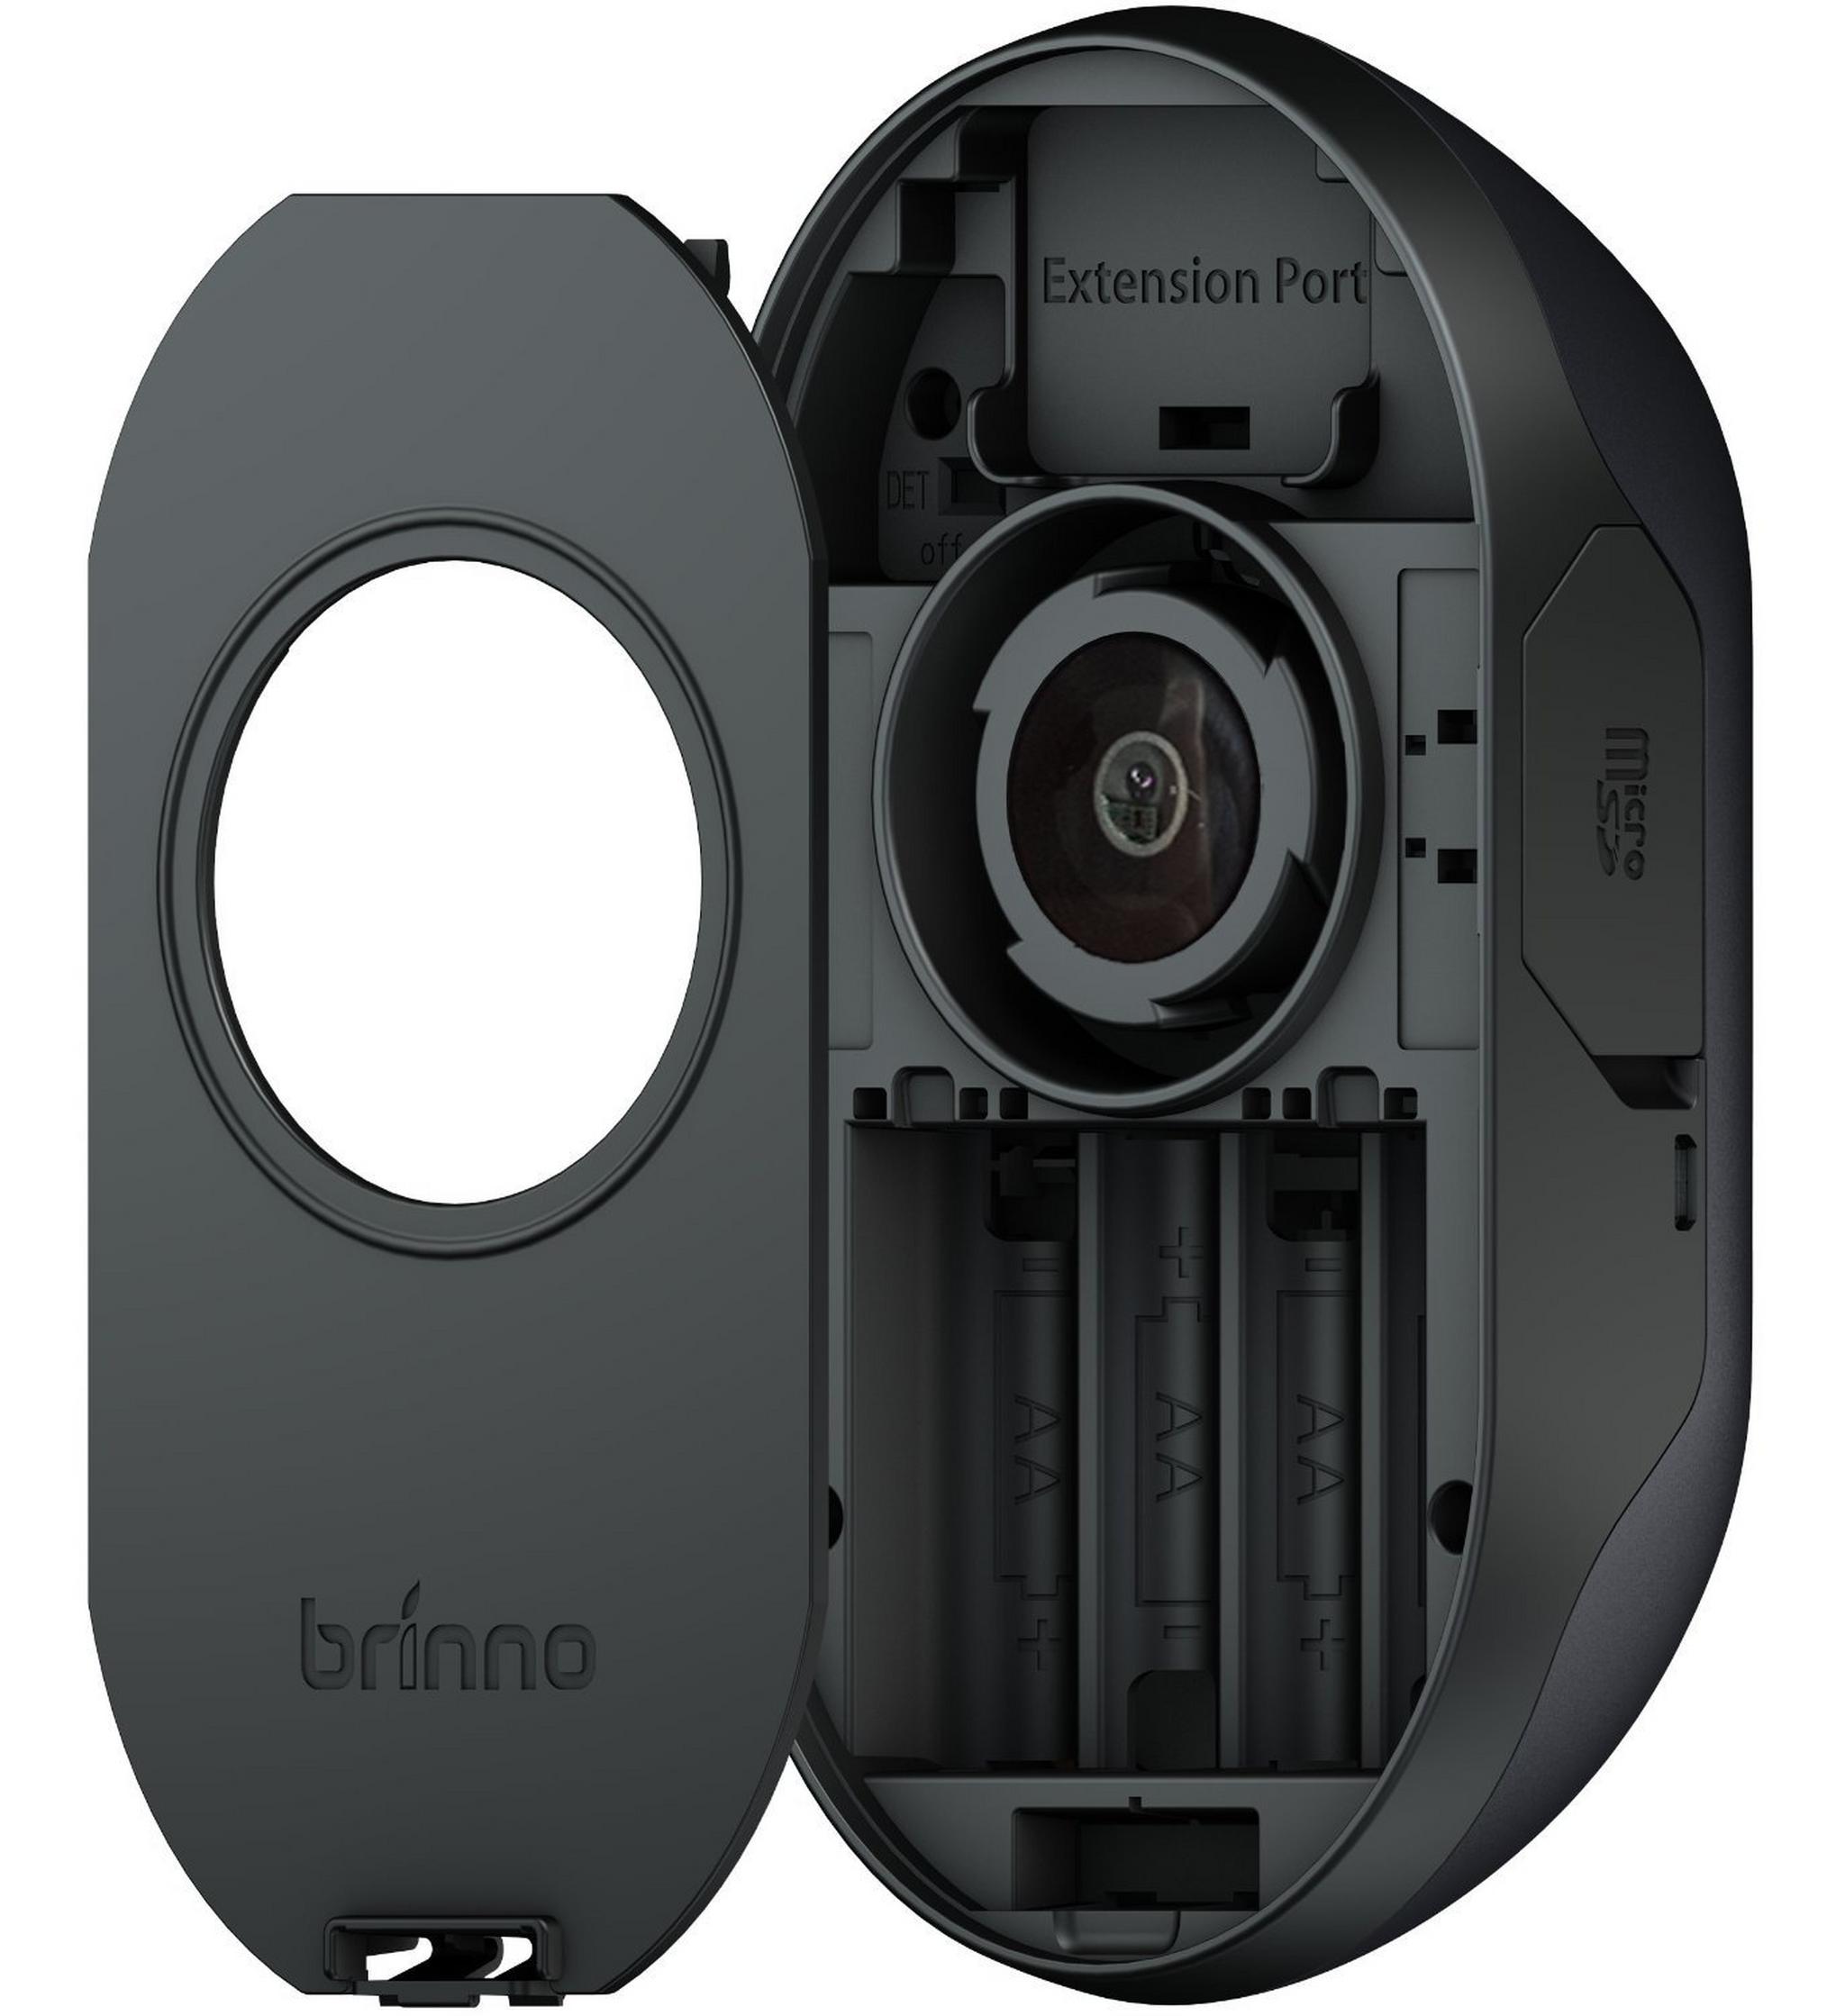 كاميرا مراقبة سحرية للباب بمستشعر حركة بدقة ١.٣ ميجابكسل من برينو (PHVMAC)